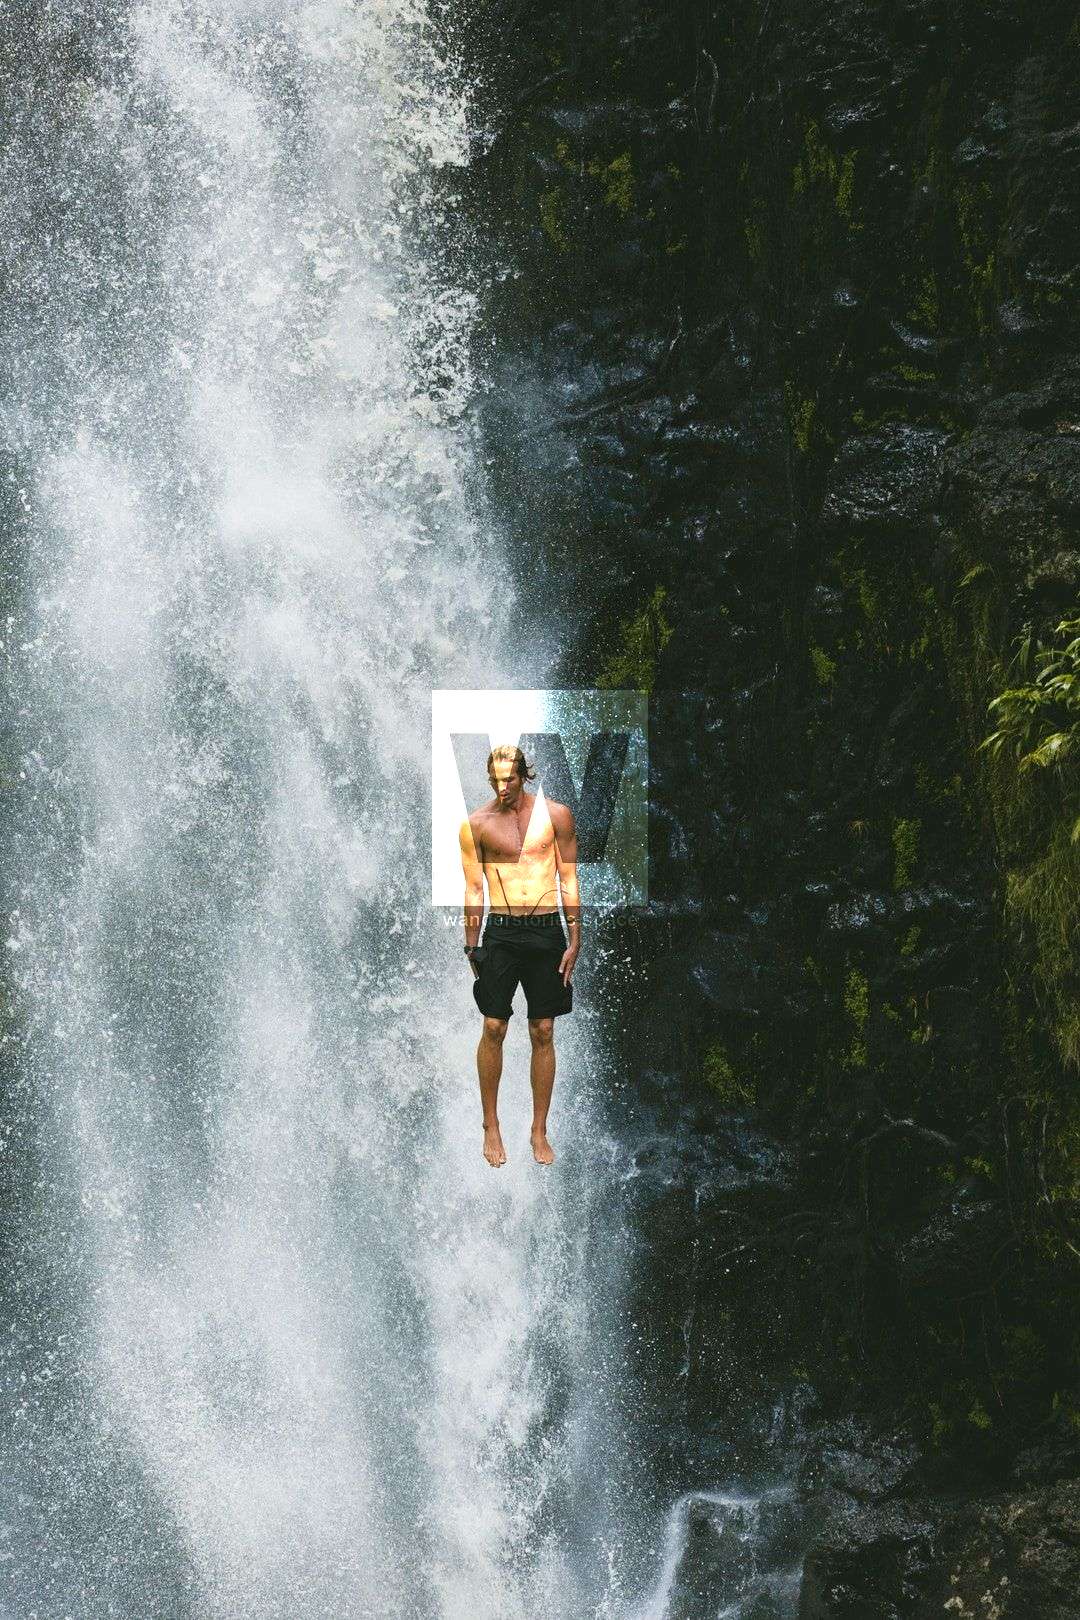 Big waterfall cliff jump